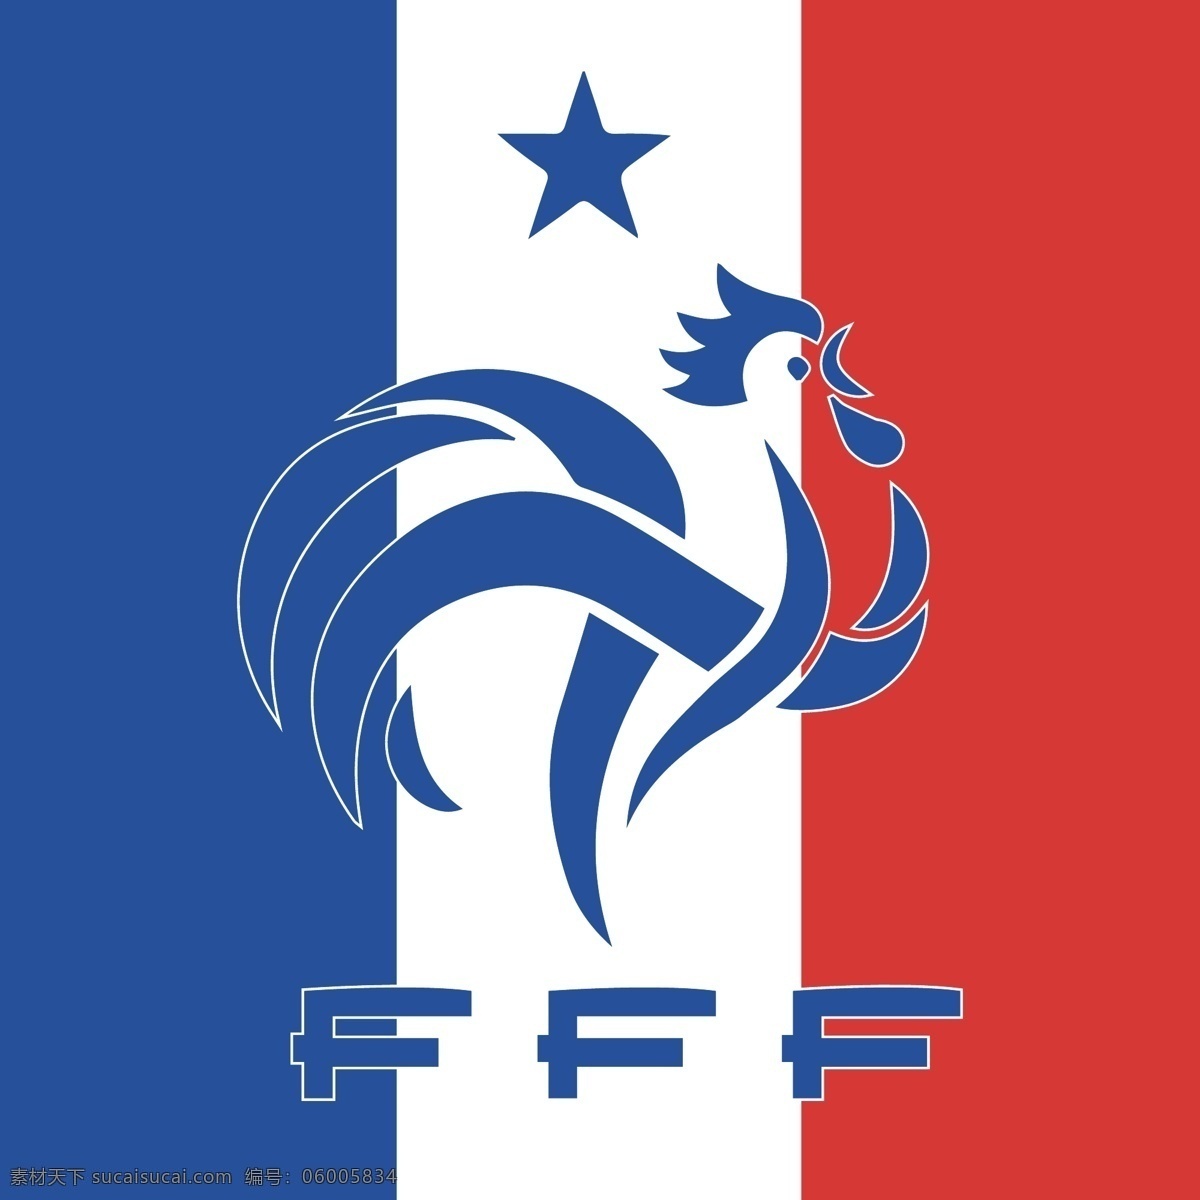 法国队标志 法国 世界杯 运动 欧洲 足球 国家队 2016 欧洲杯 本泽马 足球标志 logo设计